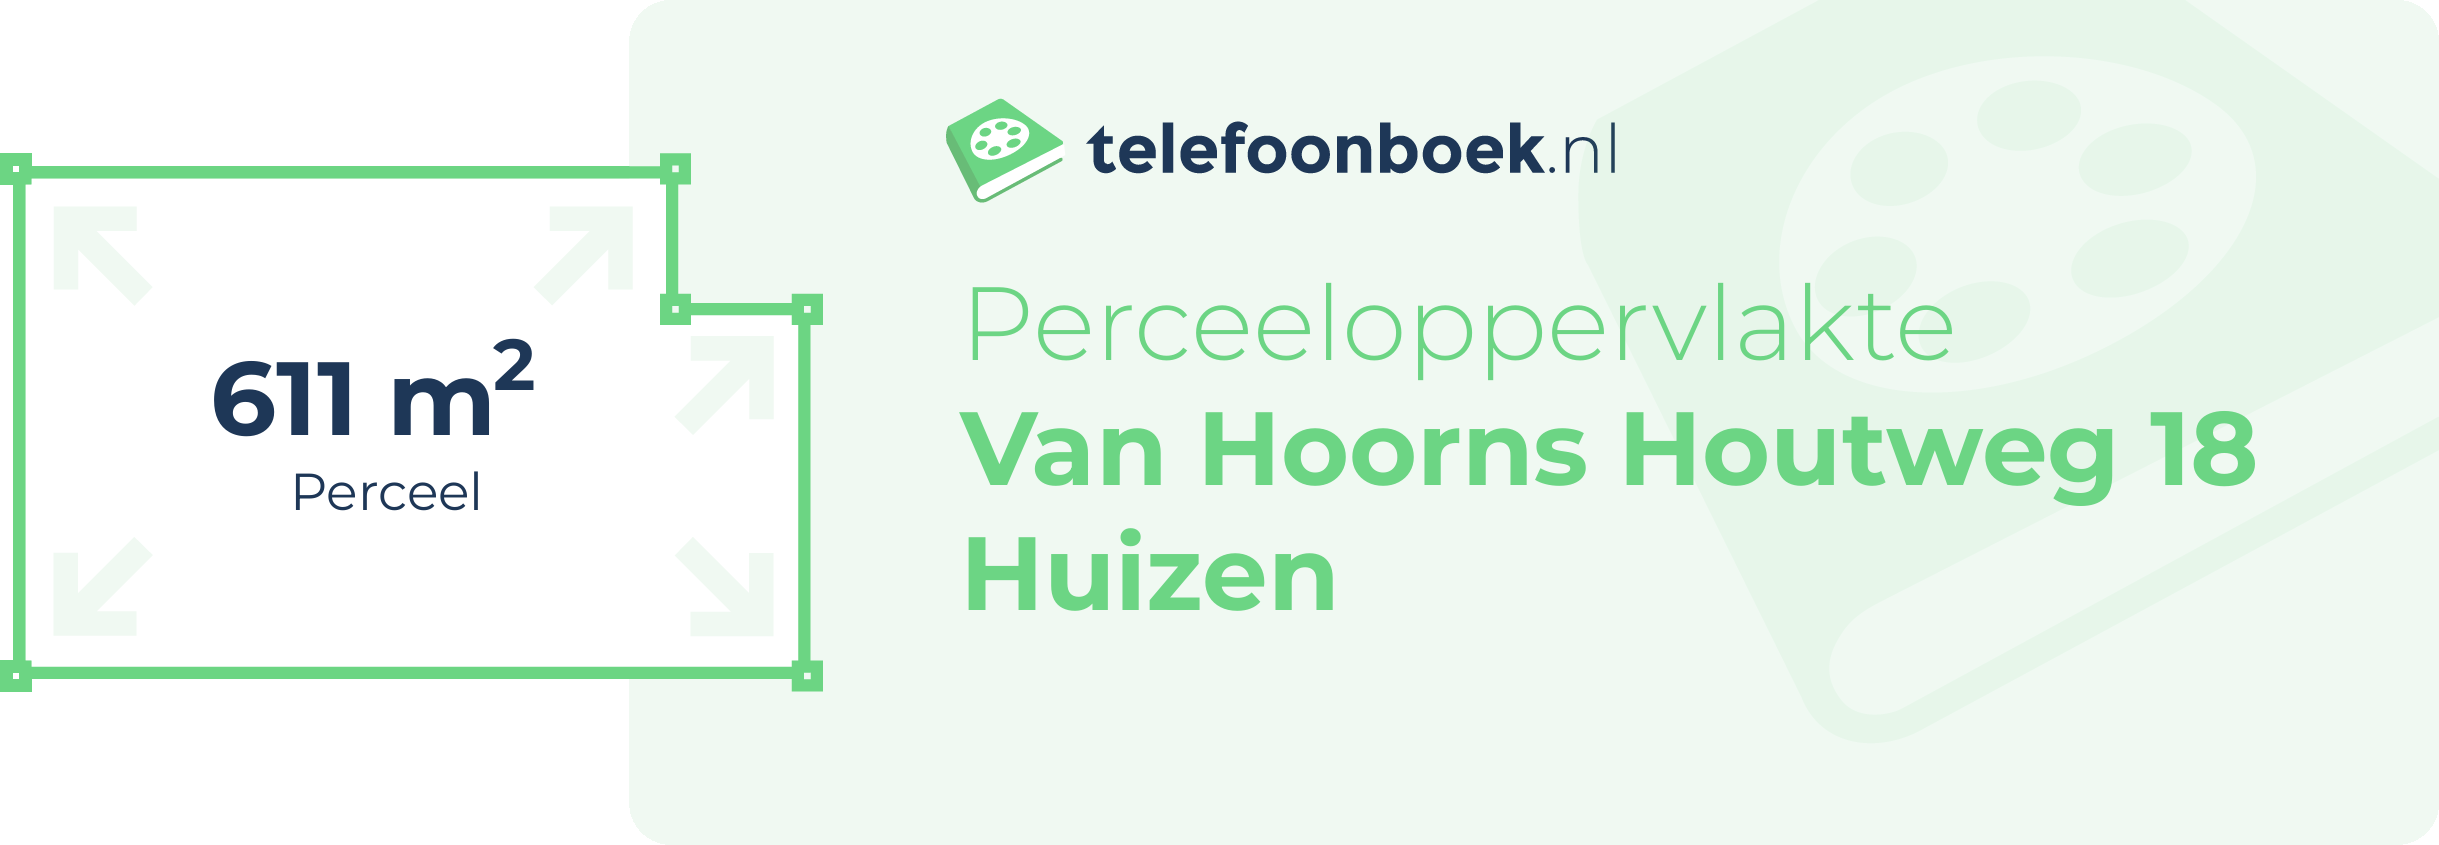 Perceeloppervlakte Van Hoorns Houtweg 18 Huizen